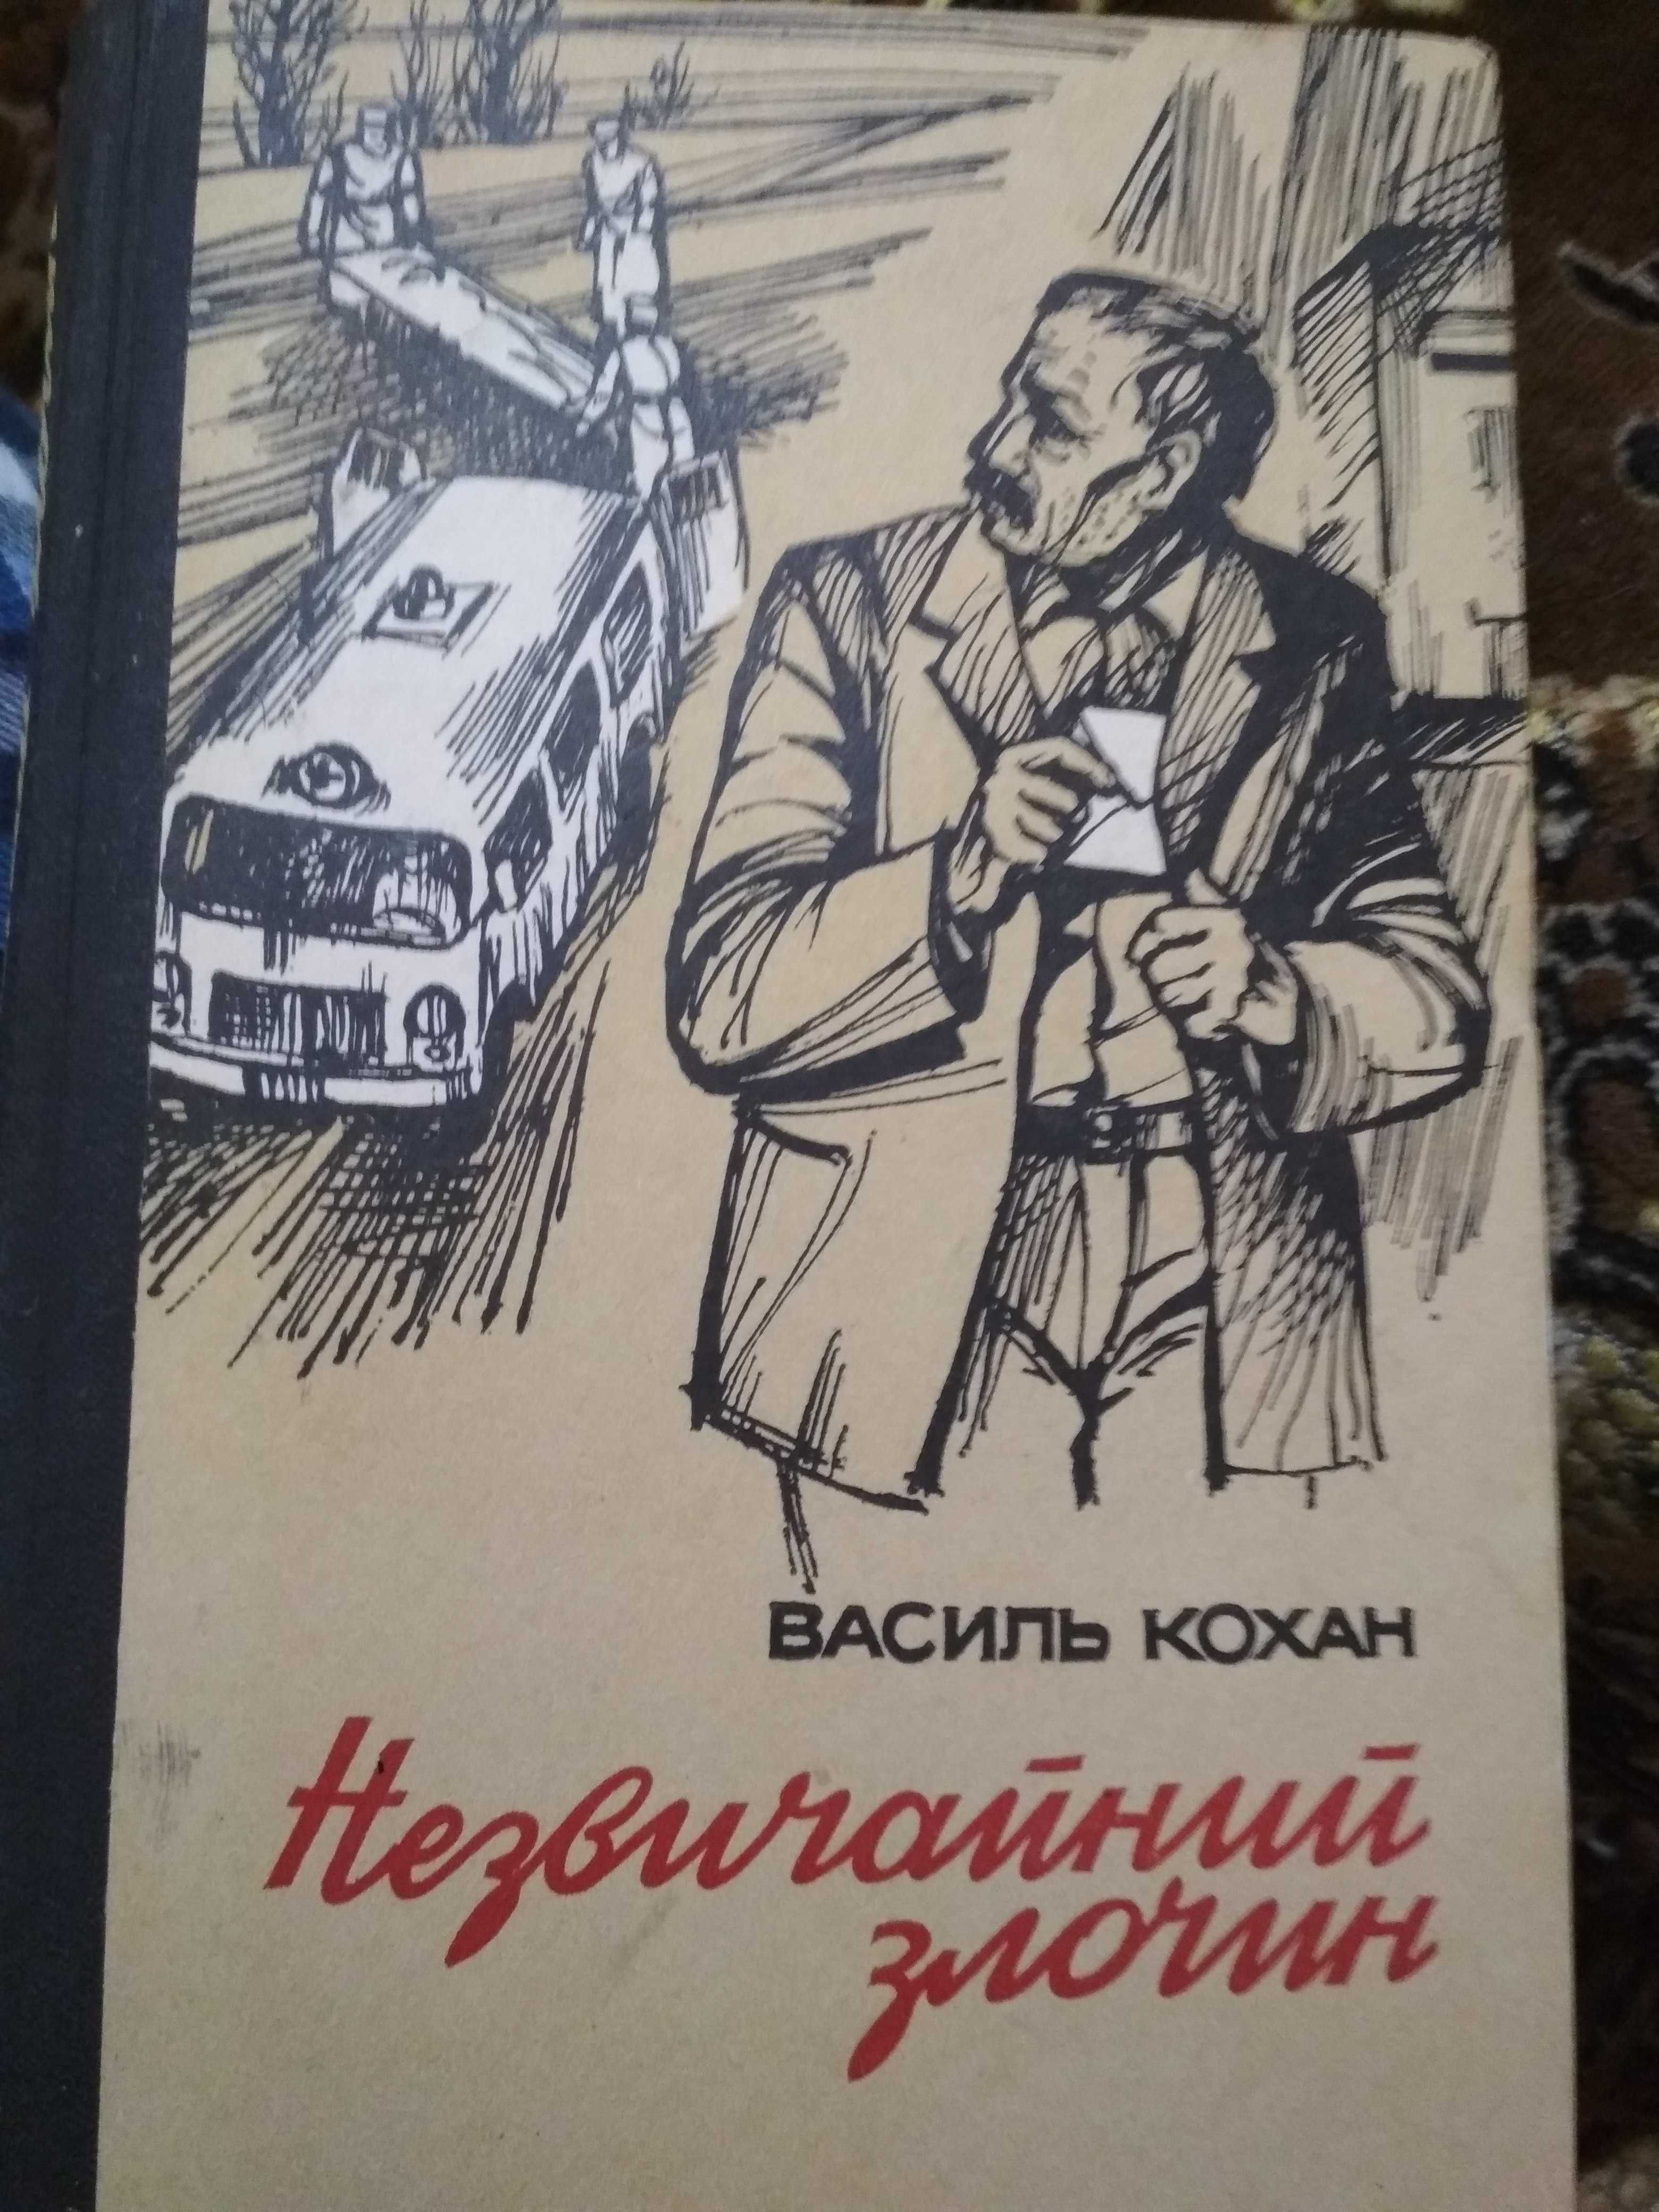 Советские приключения, детективы, фантастика, недорого,  распродажа!!!